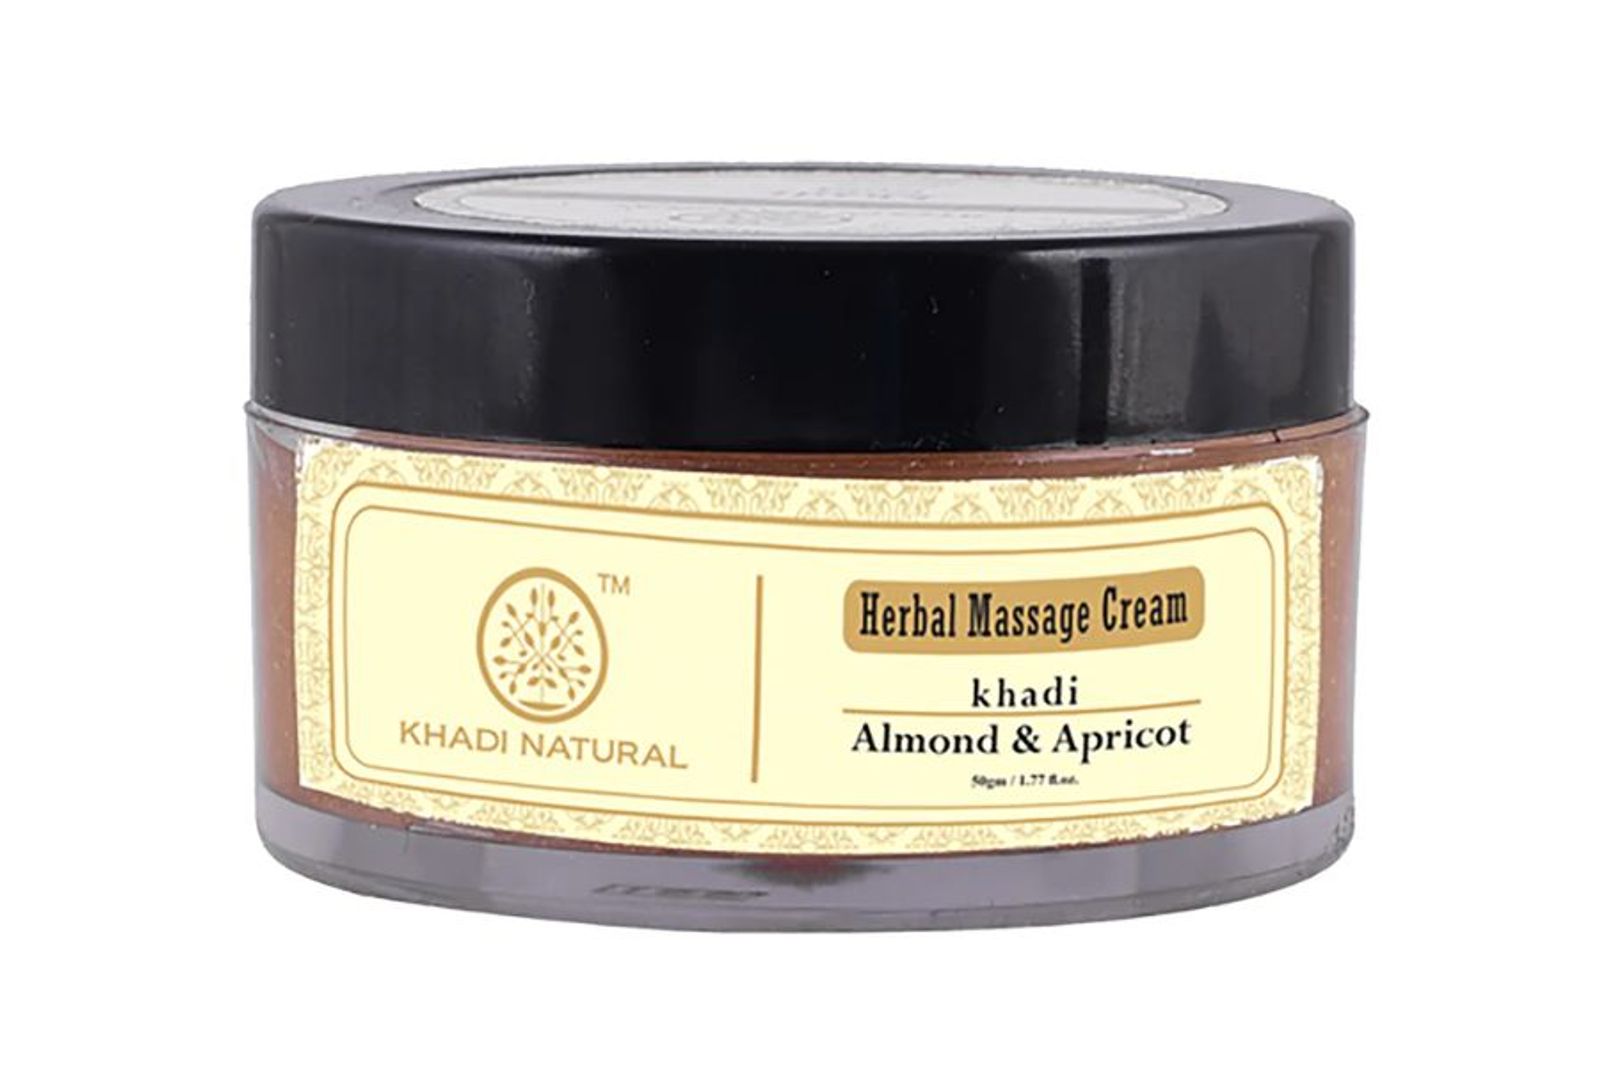 Khadi Natural Almond & Apricot Massage Cream